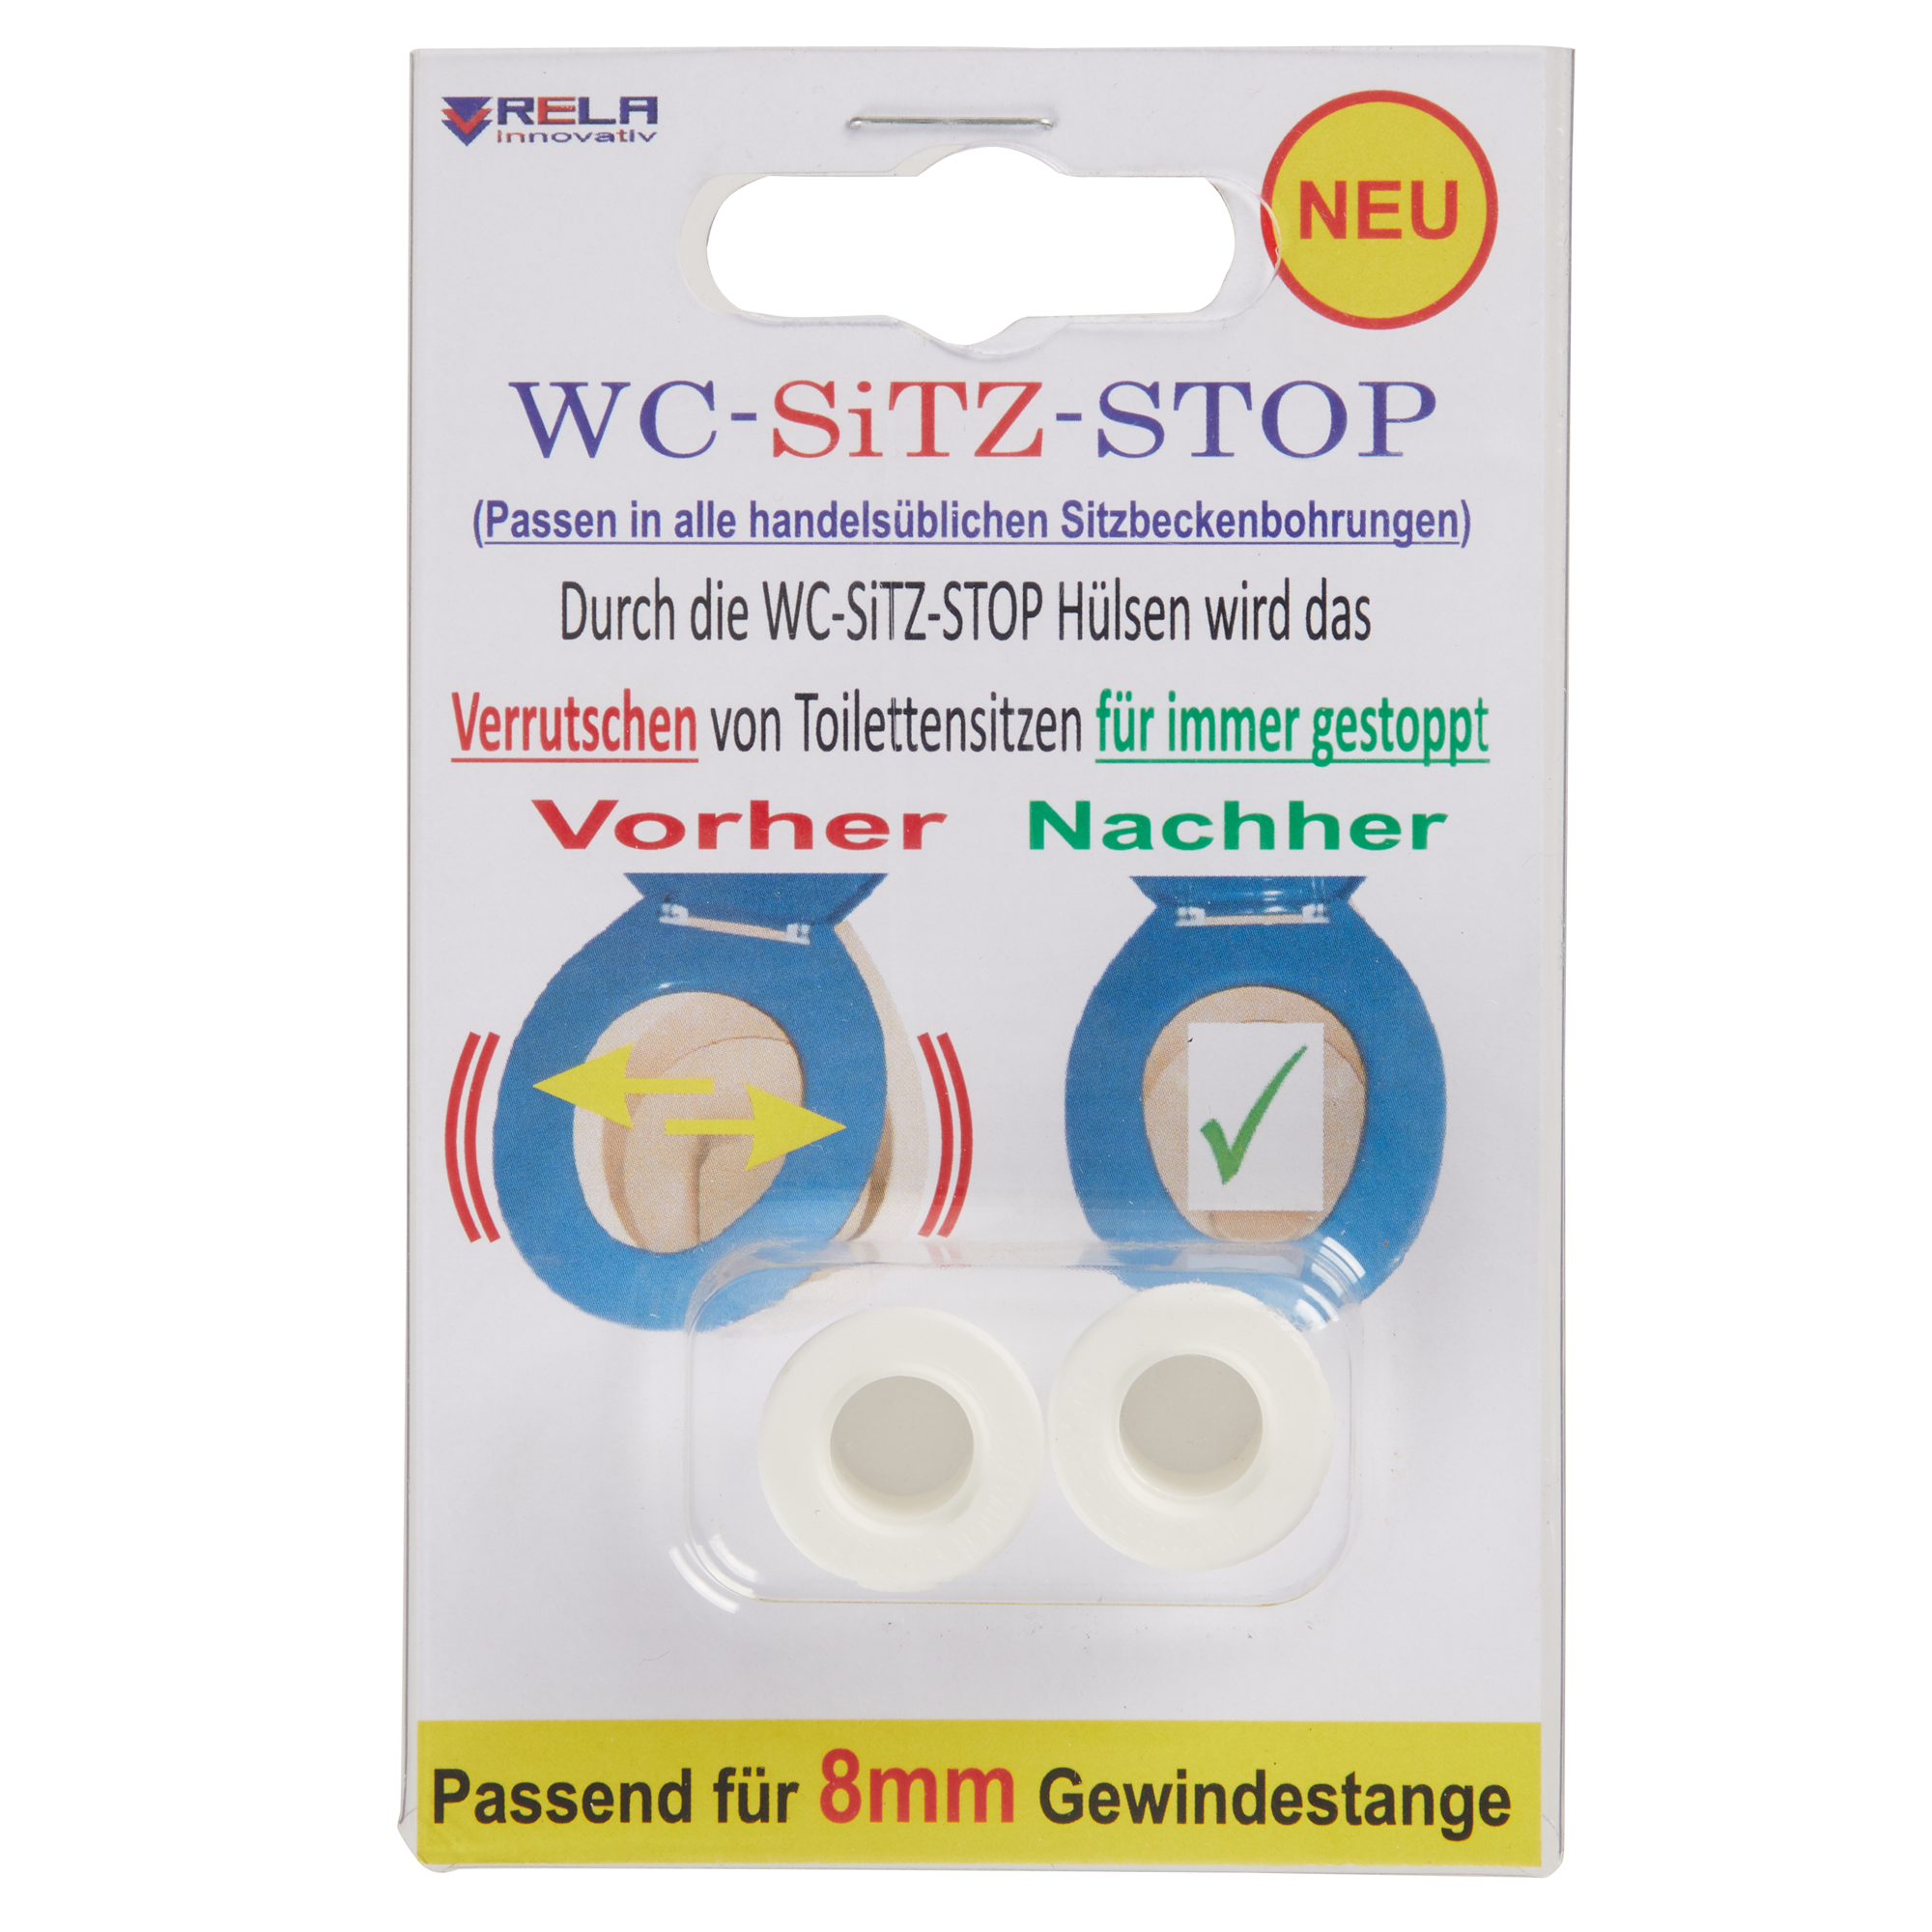 WC-Sitz Stop Hülsen für 8 mm Gewindestange 2 Stück + product picture